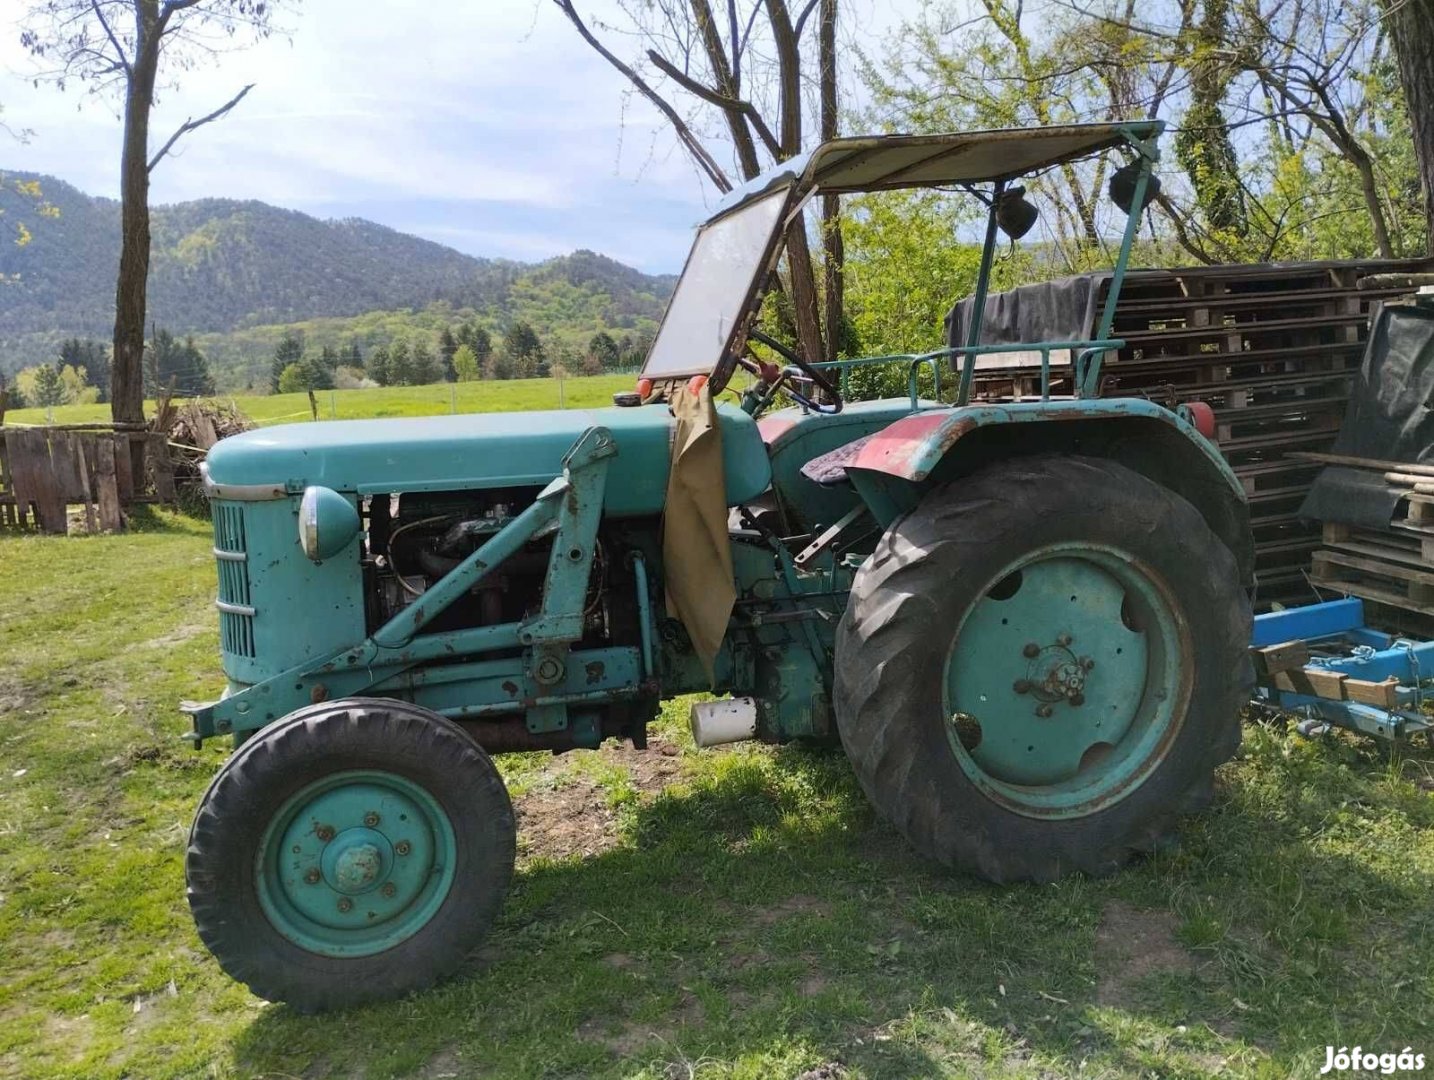 Eladó egy Bührer típusú veterán traktor